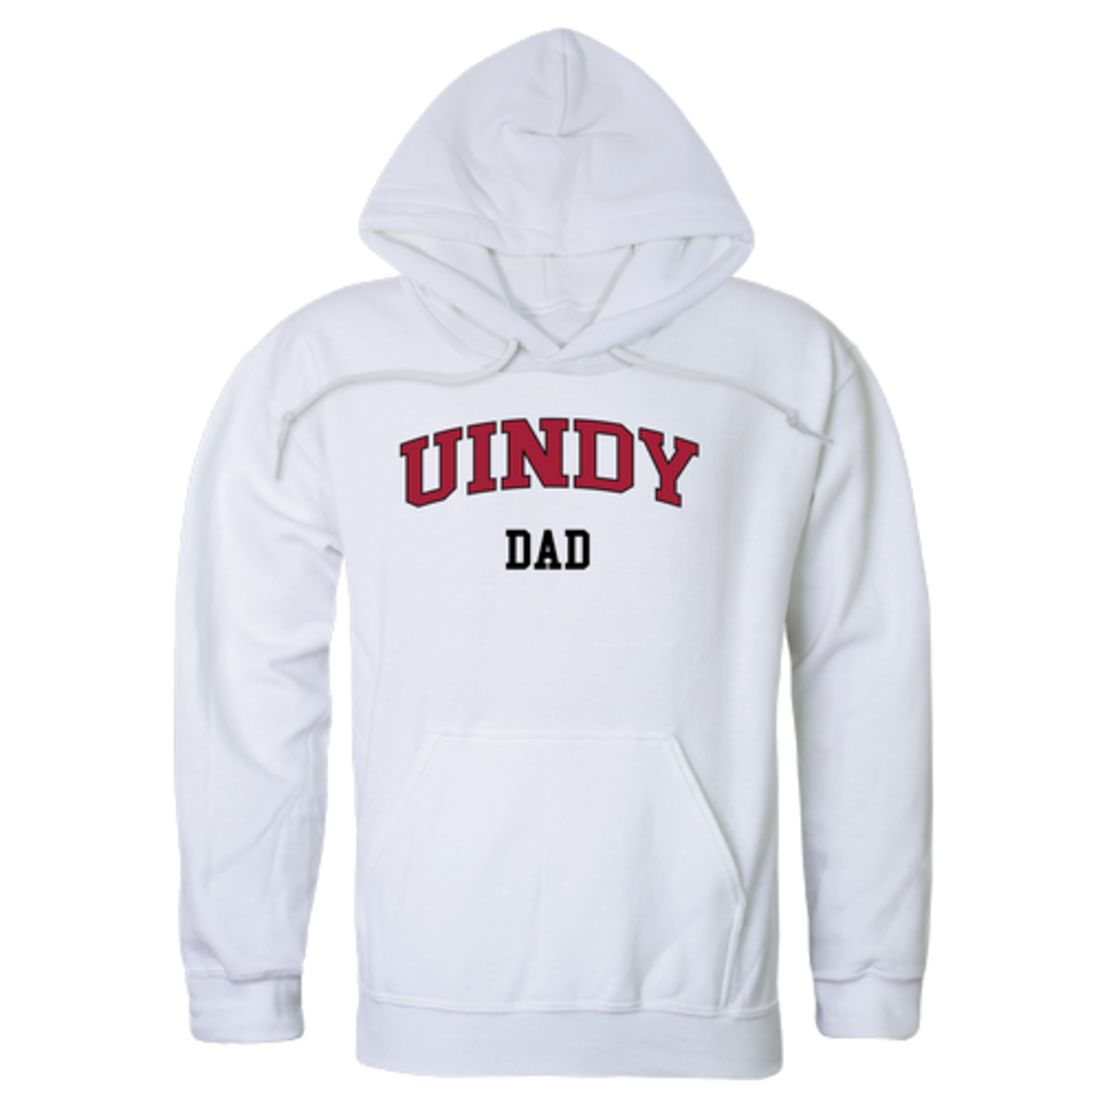 UIndy University of Indianapolis Greyhounds Dad Fleece Hoodie Sweatshirts Heather Charcoal-Campus-Wardrobe